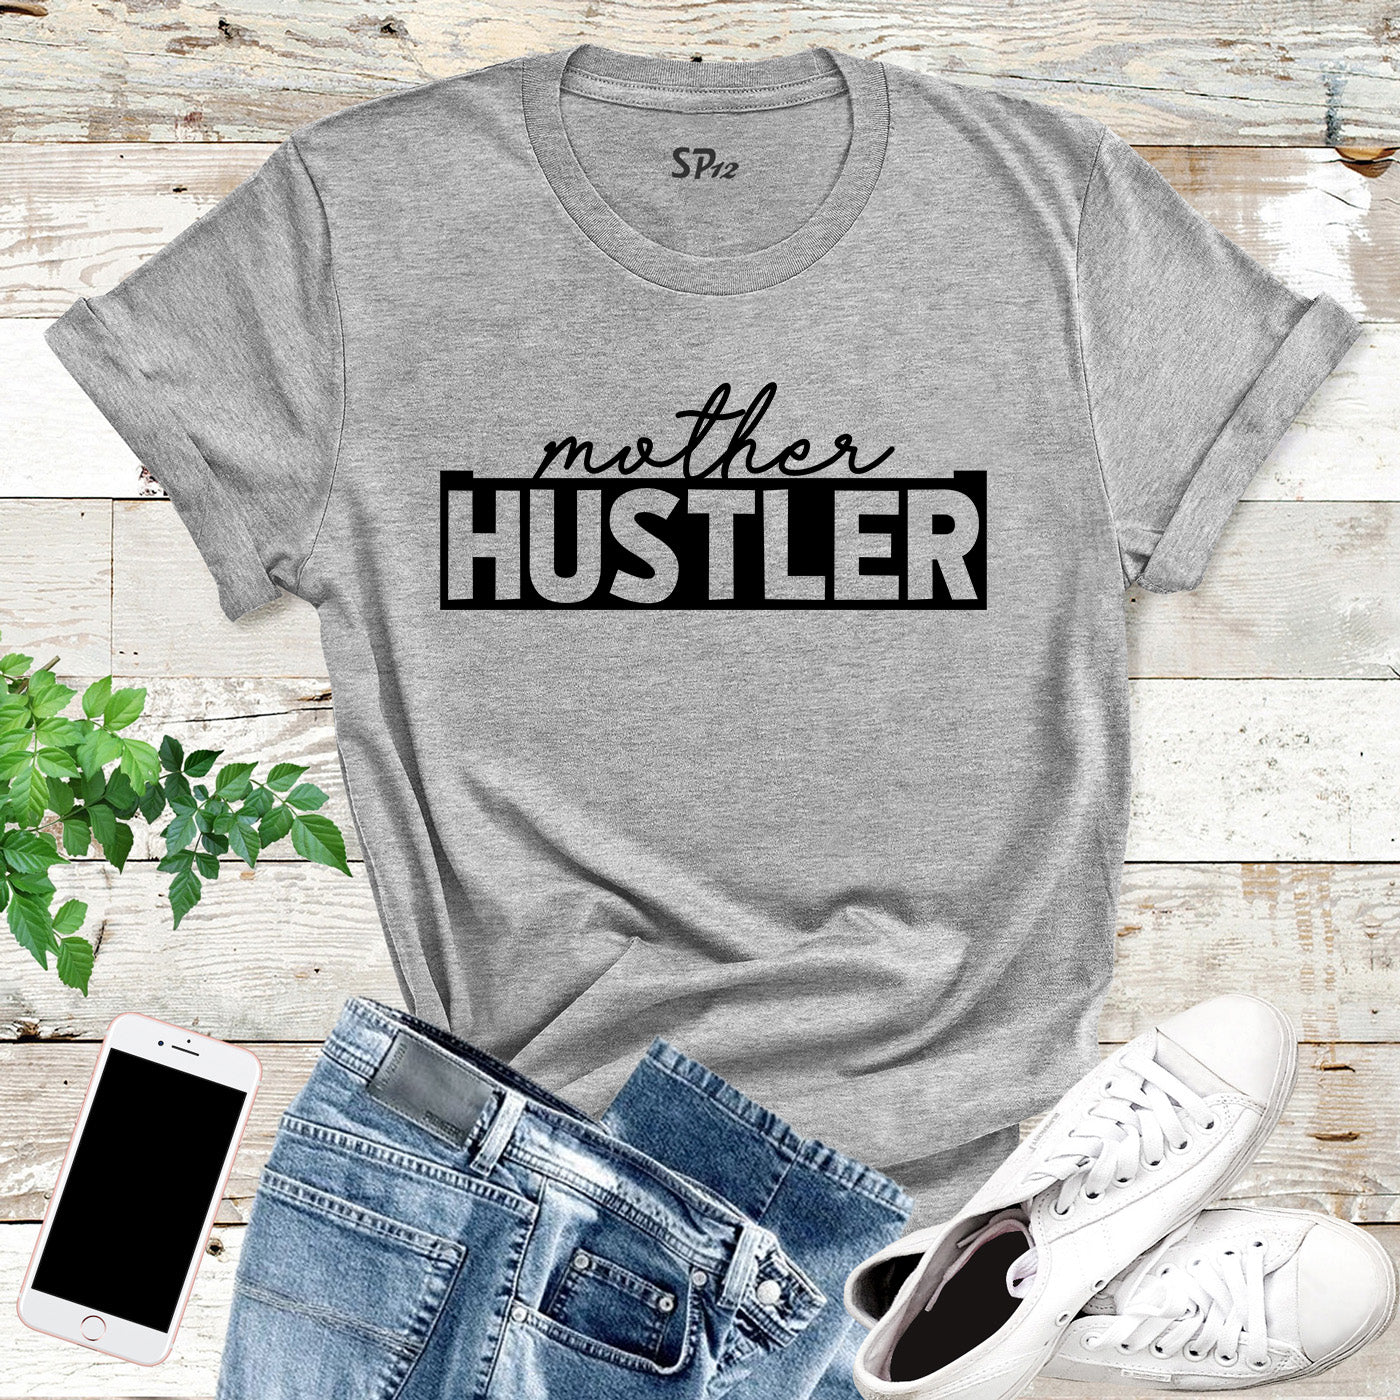 Mother Hustler T Shirt